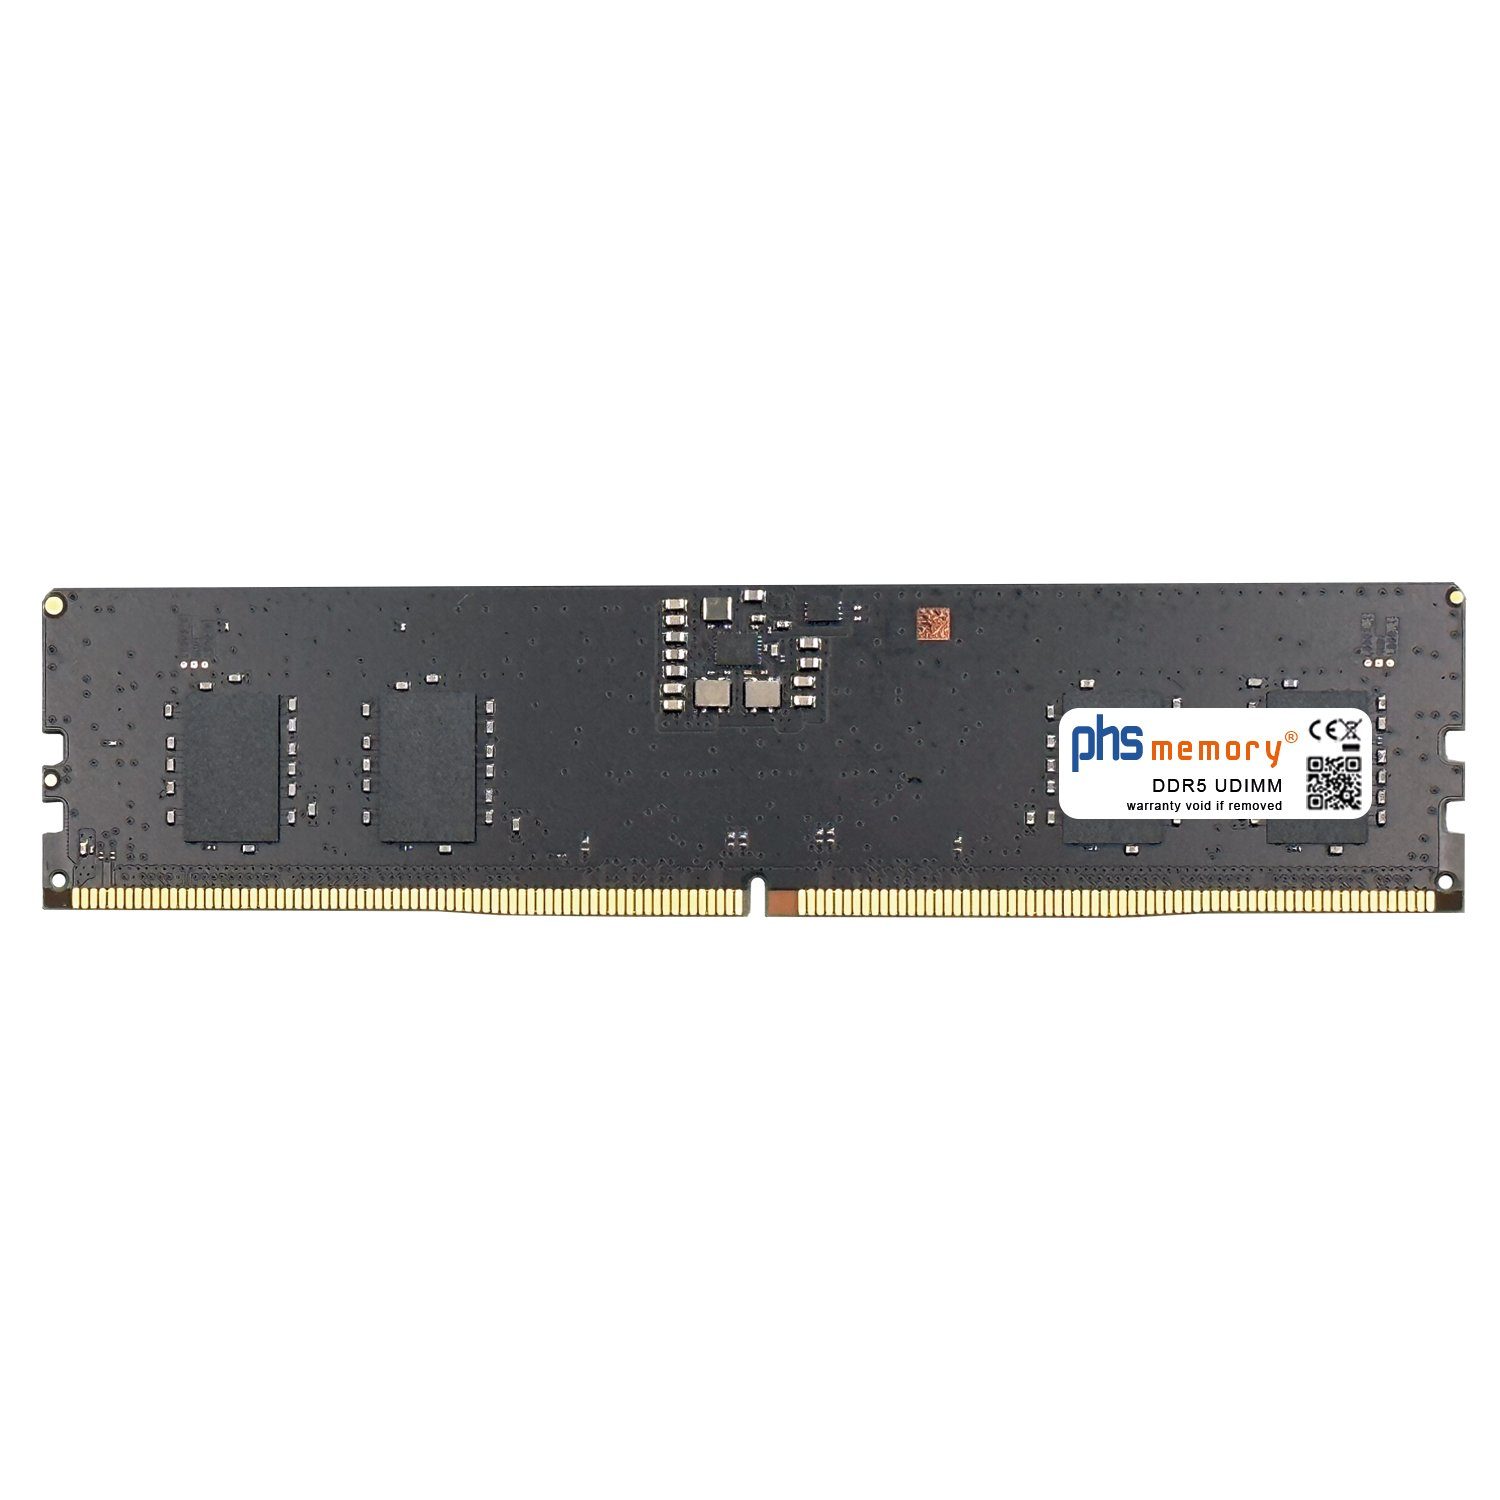 PHS-memory RAM für Captiva Highend Gaming R73-977 Arbeitsspeicher